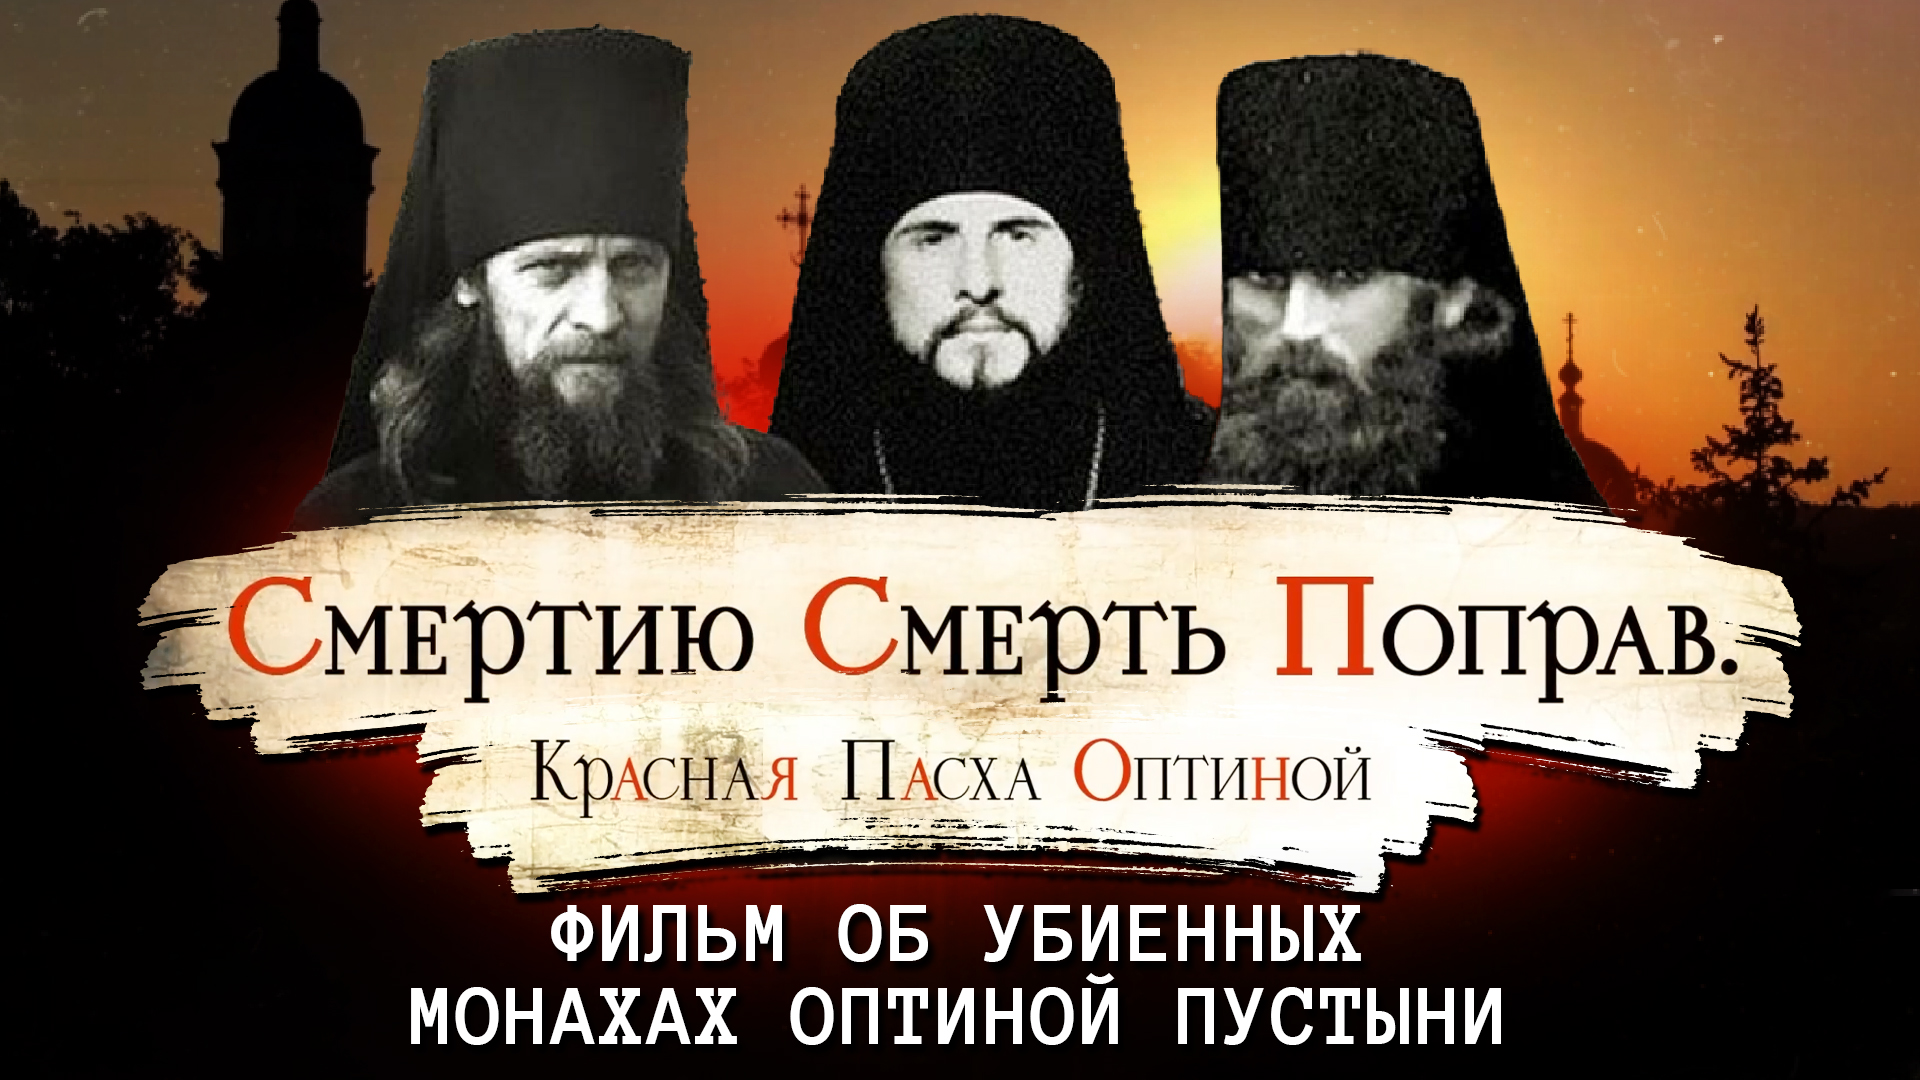 Убиенные монахи оптиной пустыни. Оптина пустынь три убиенных монаха. Красная Пасха Оптиной пустыни 1993.